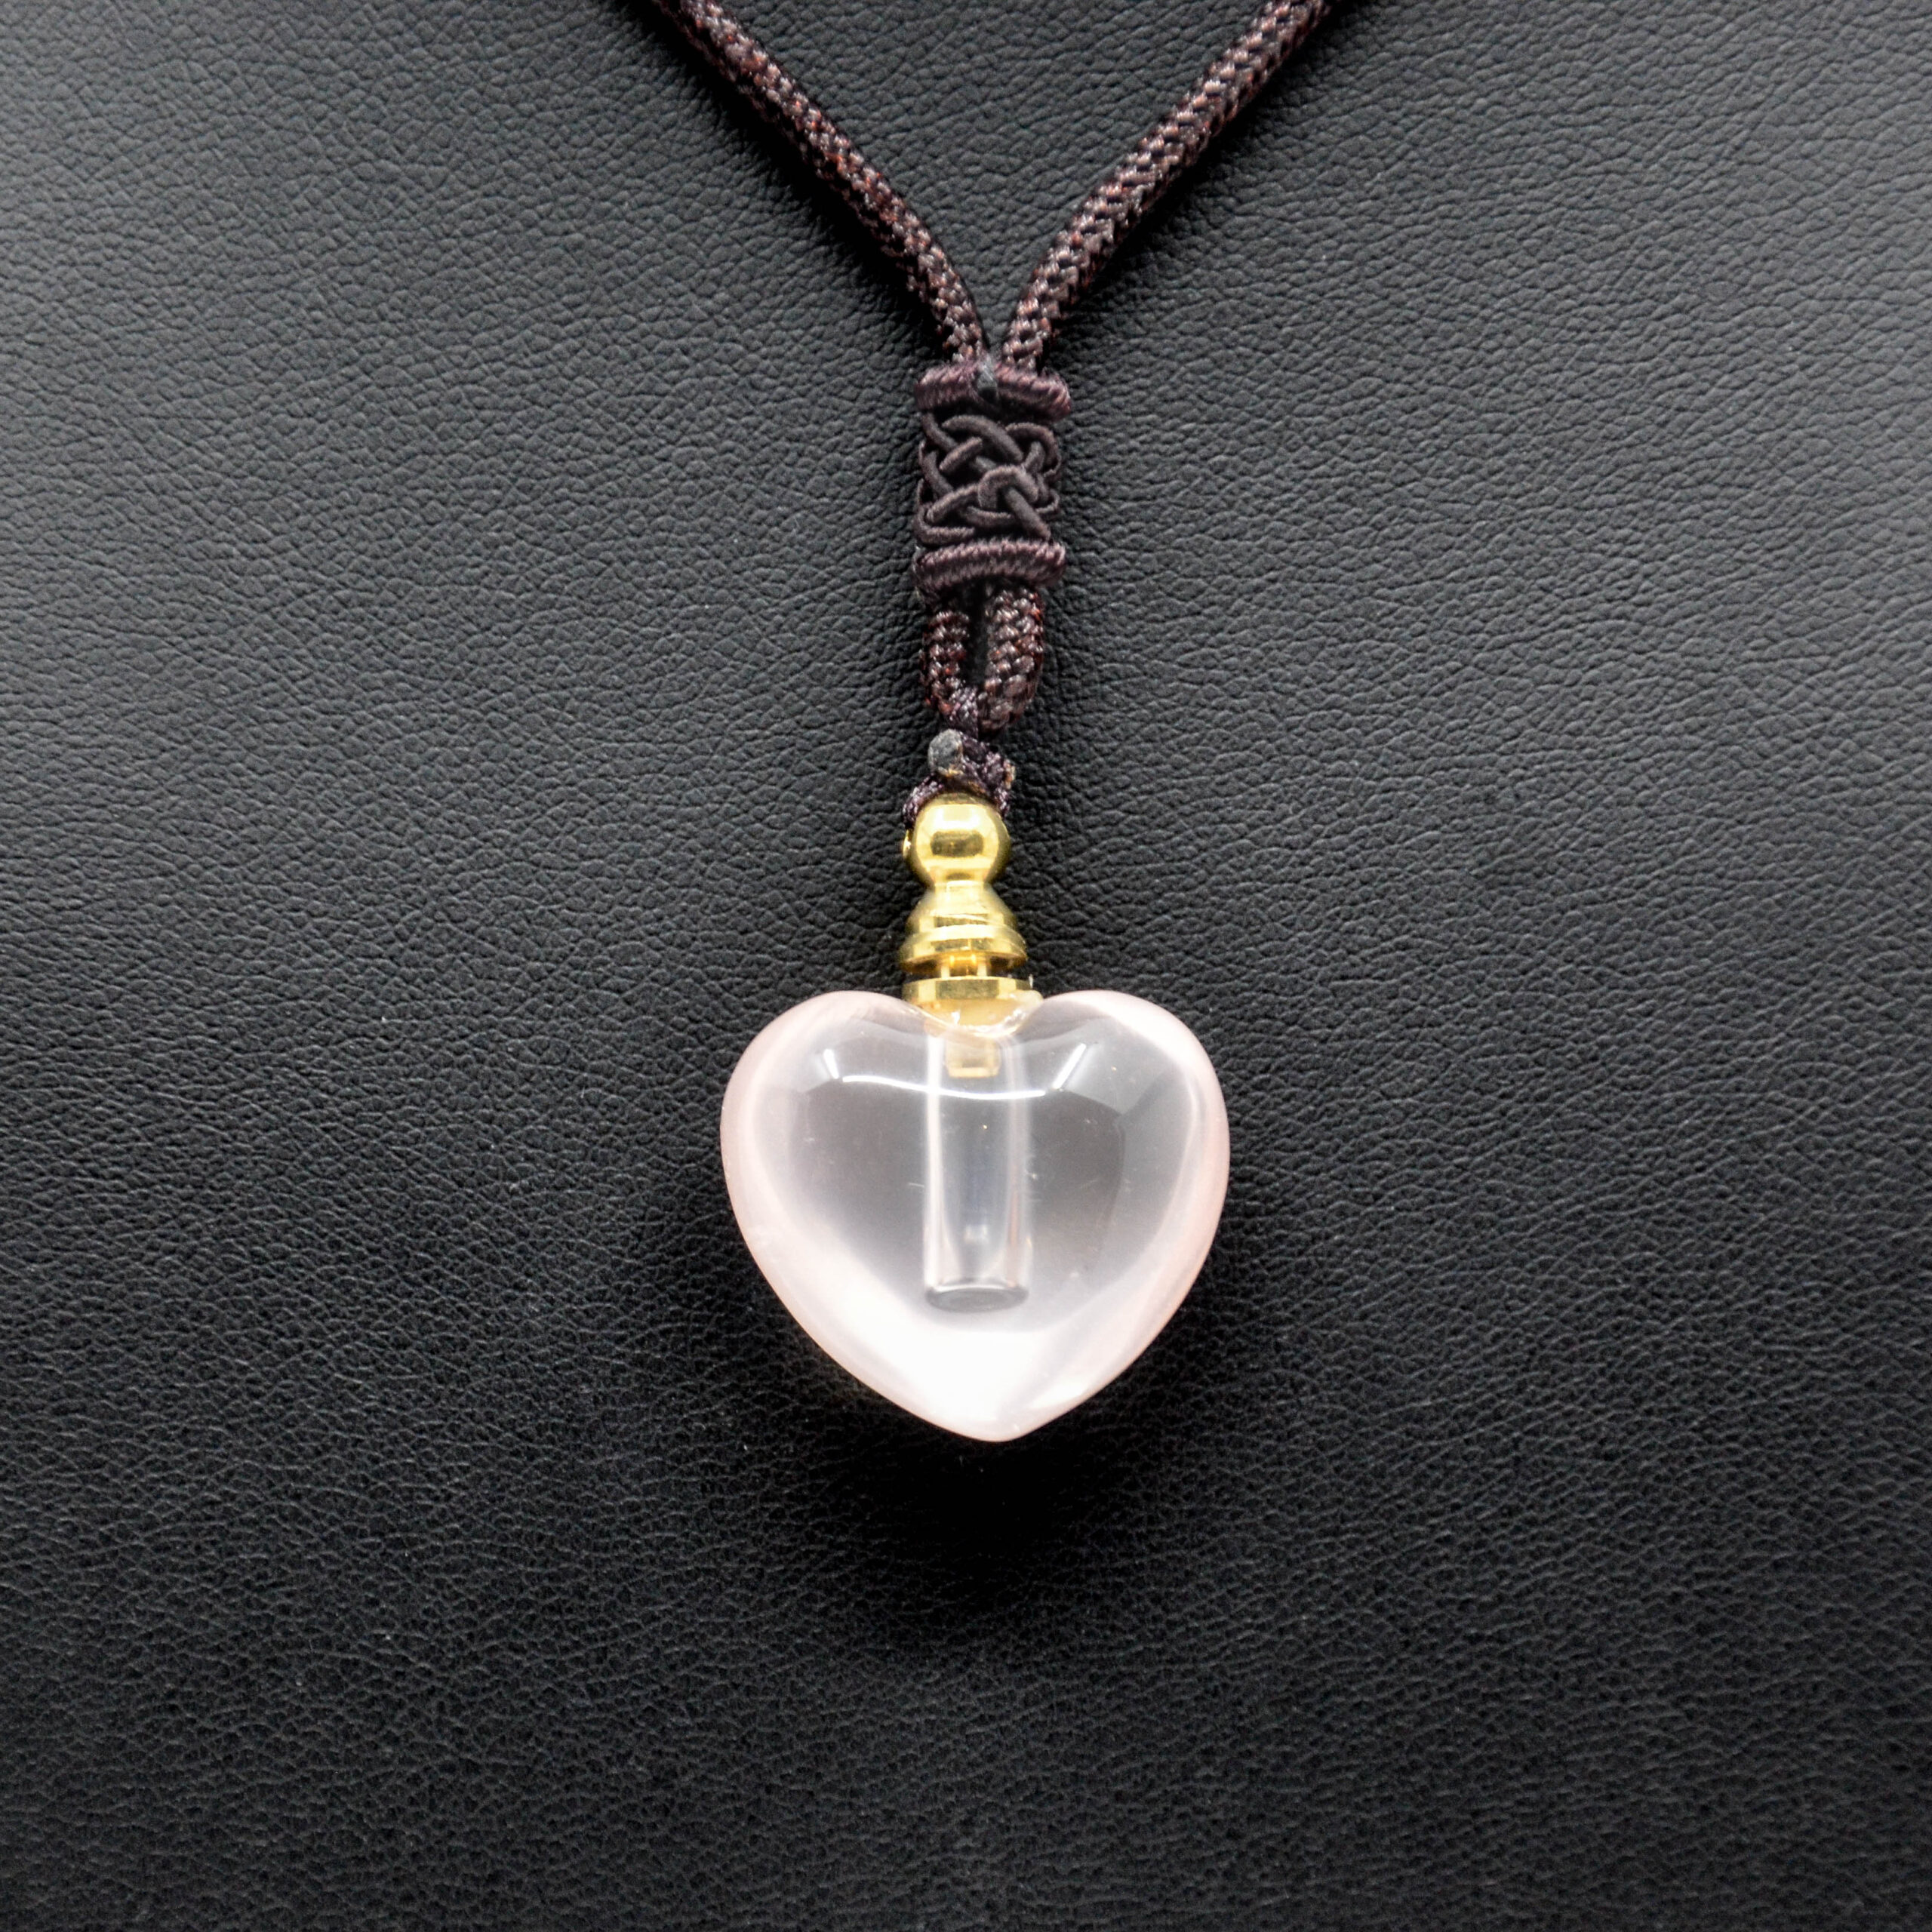 Natural Rose Quartz Heart-Shaped Essential Oil/Perfume Bottle Pendant Necklace